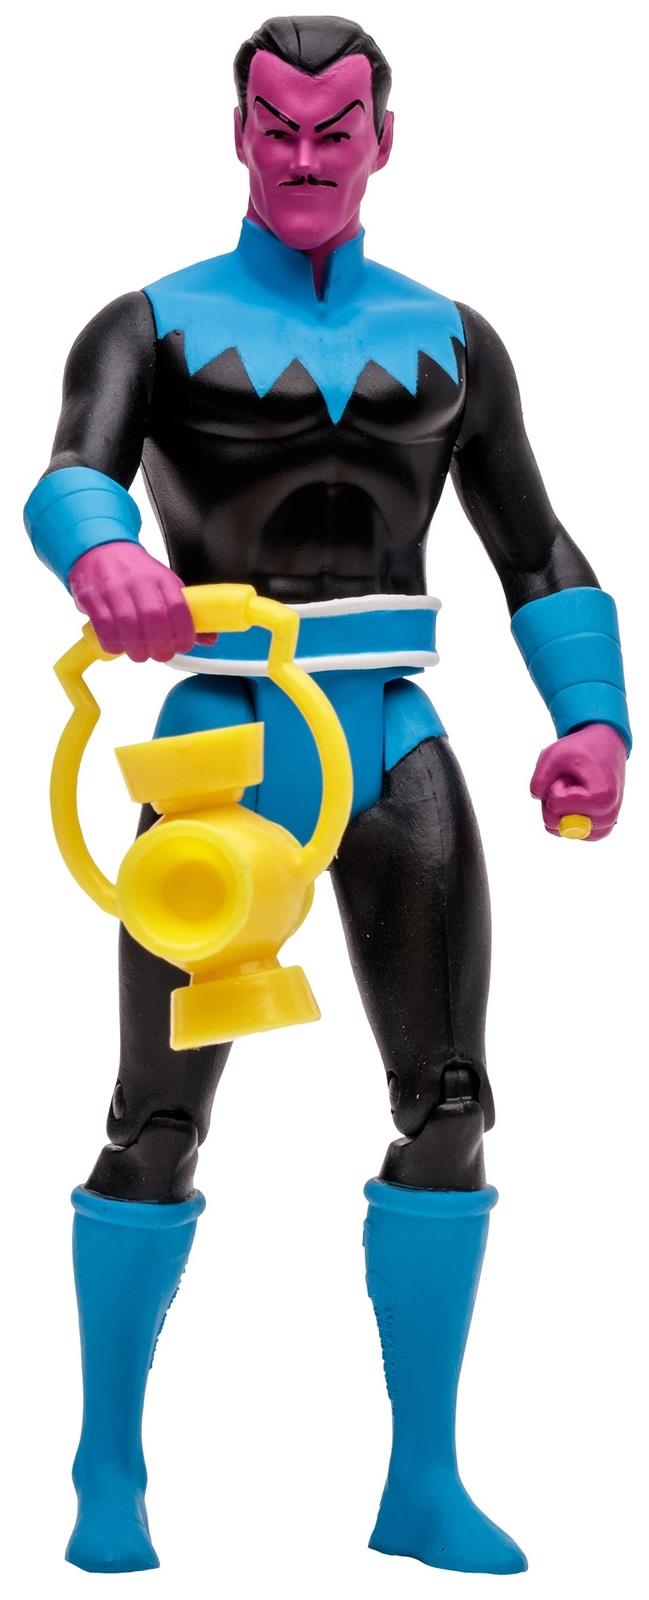 DC Super Powers: Sinestro (Superfriends) - 4.5" Action Figure